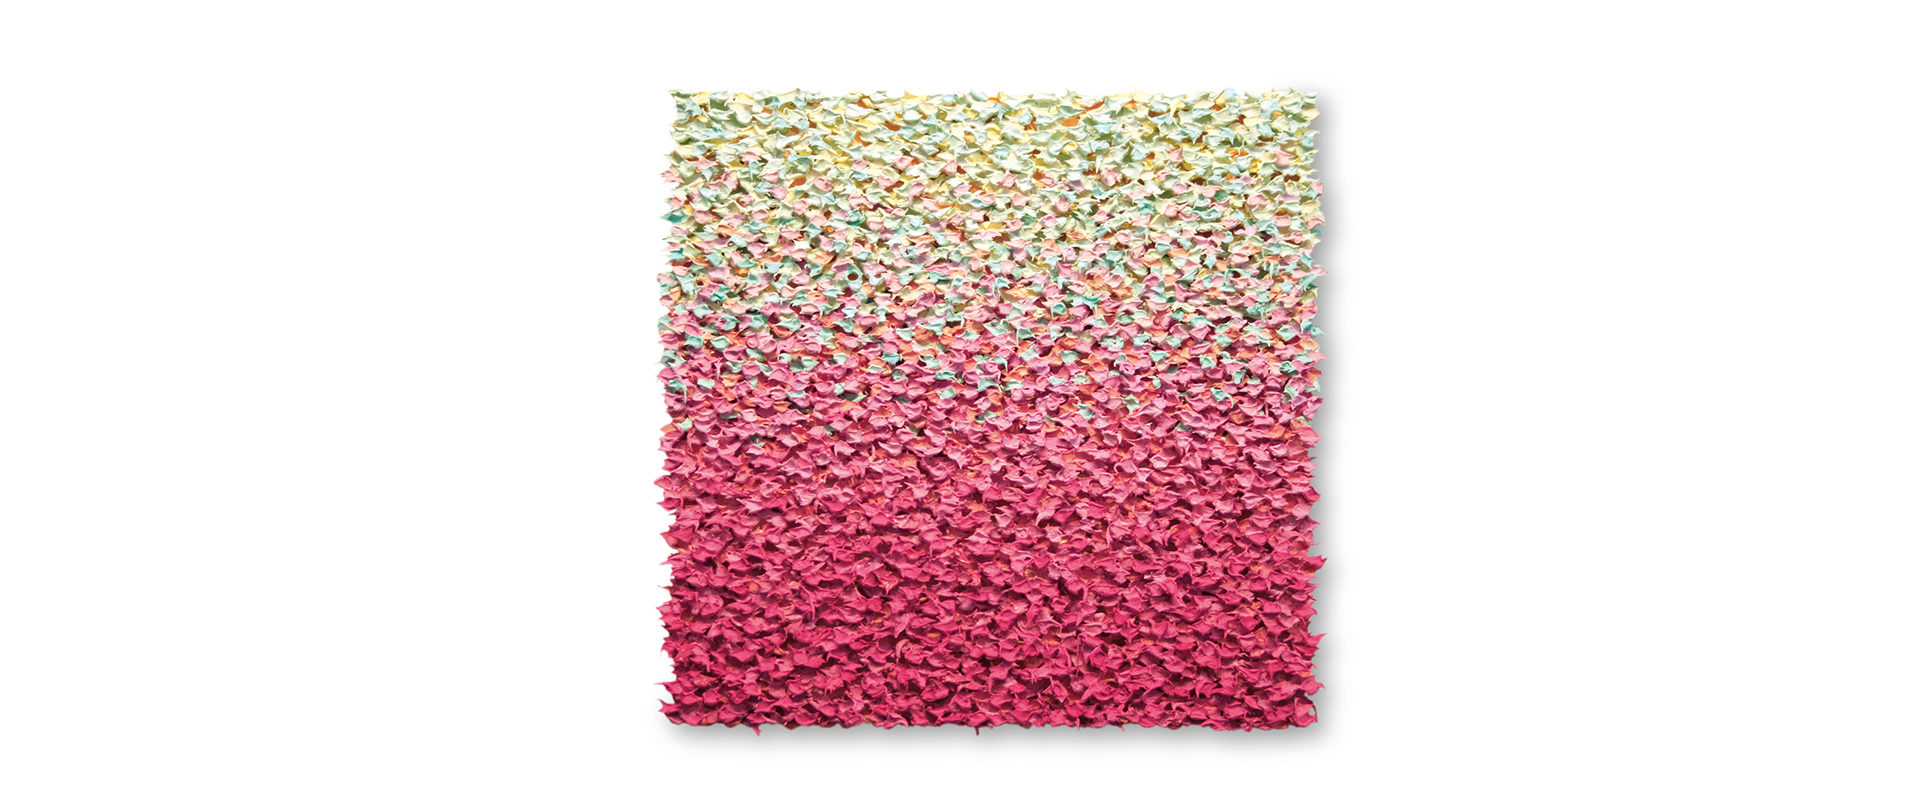 Robert Sagerman, “3,393” - 2013, Öl auf Leinwand, 30,5 x 30,5 cm